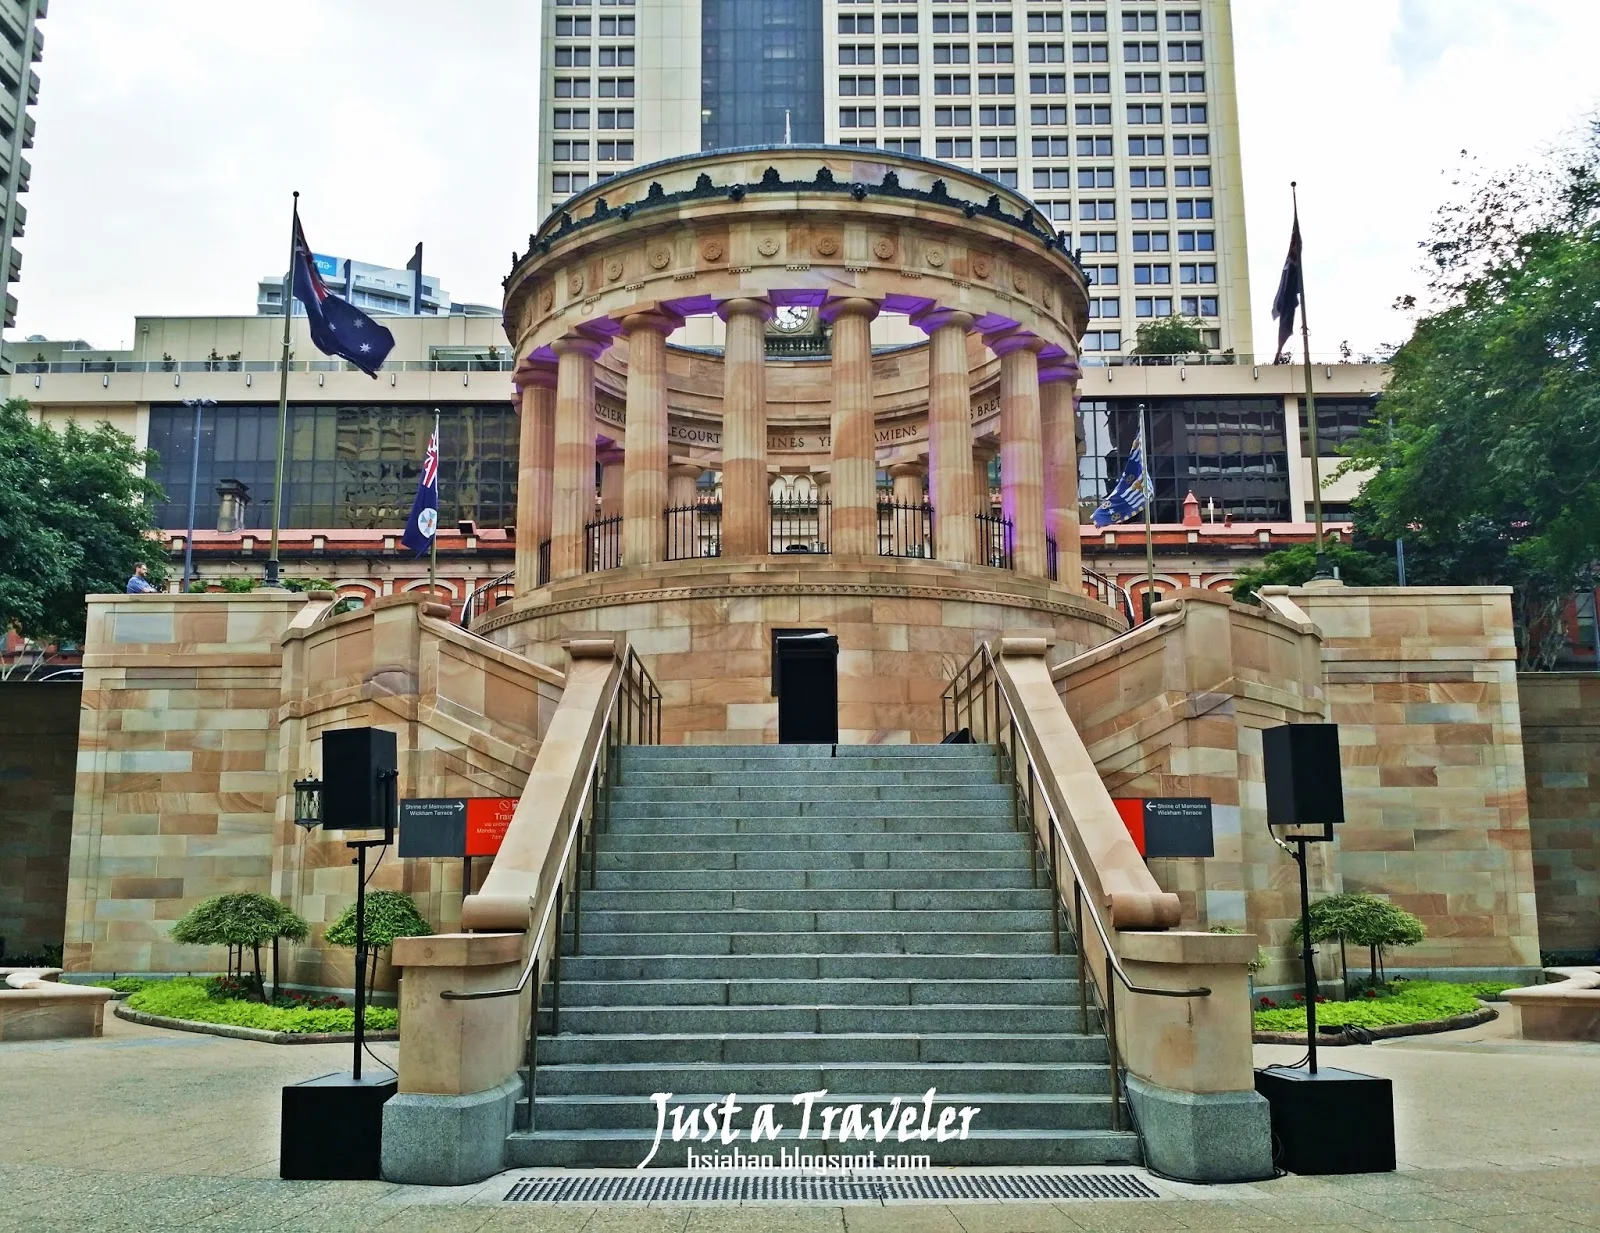 Brisbane-attraction-tourist-spot-ANZAC-Square-ANZAC Day-travel-Australia